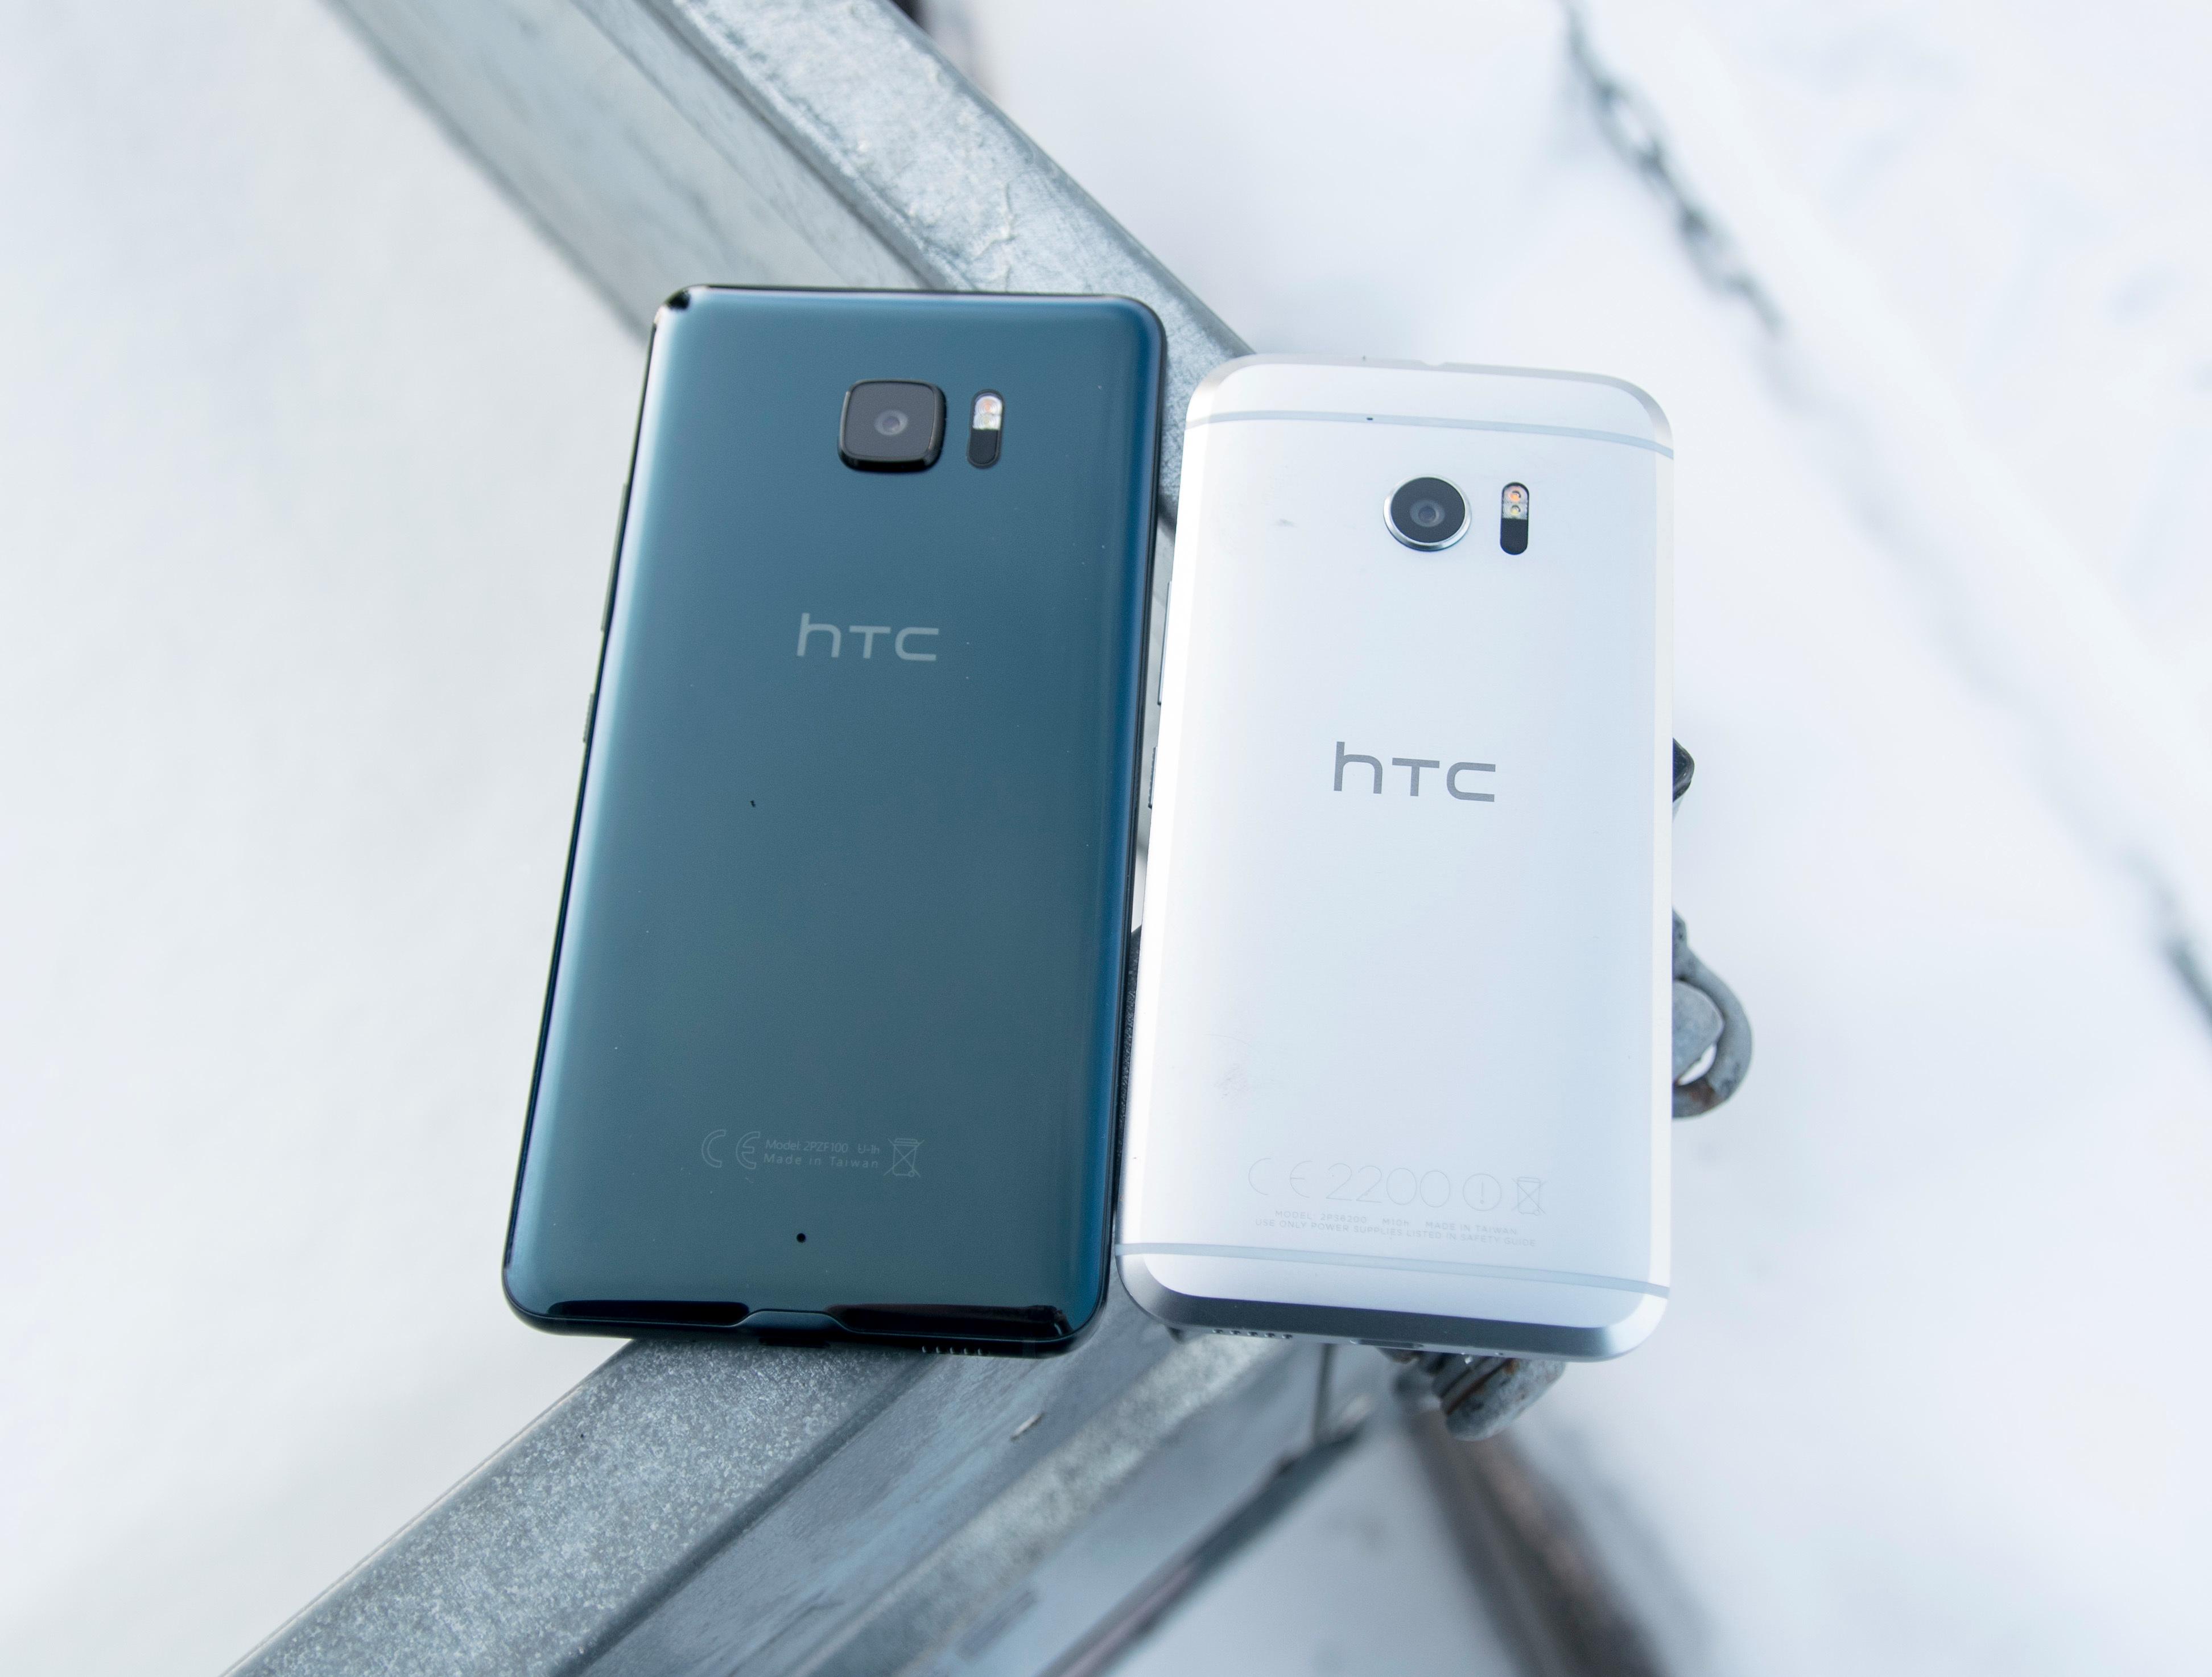 HTC U Ultra er en stor telefon. Skjermen er hele 5,7 tommer, og ekstraskjermen over gjør telefonen enda litt voksnere i størrelse. Til høyre ser du fjorårets HTC 10, som er vesentlig mer kompakt med sin 5,2 tommer store skjerm.